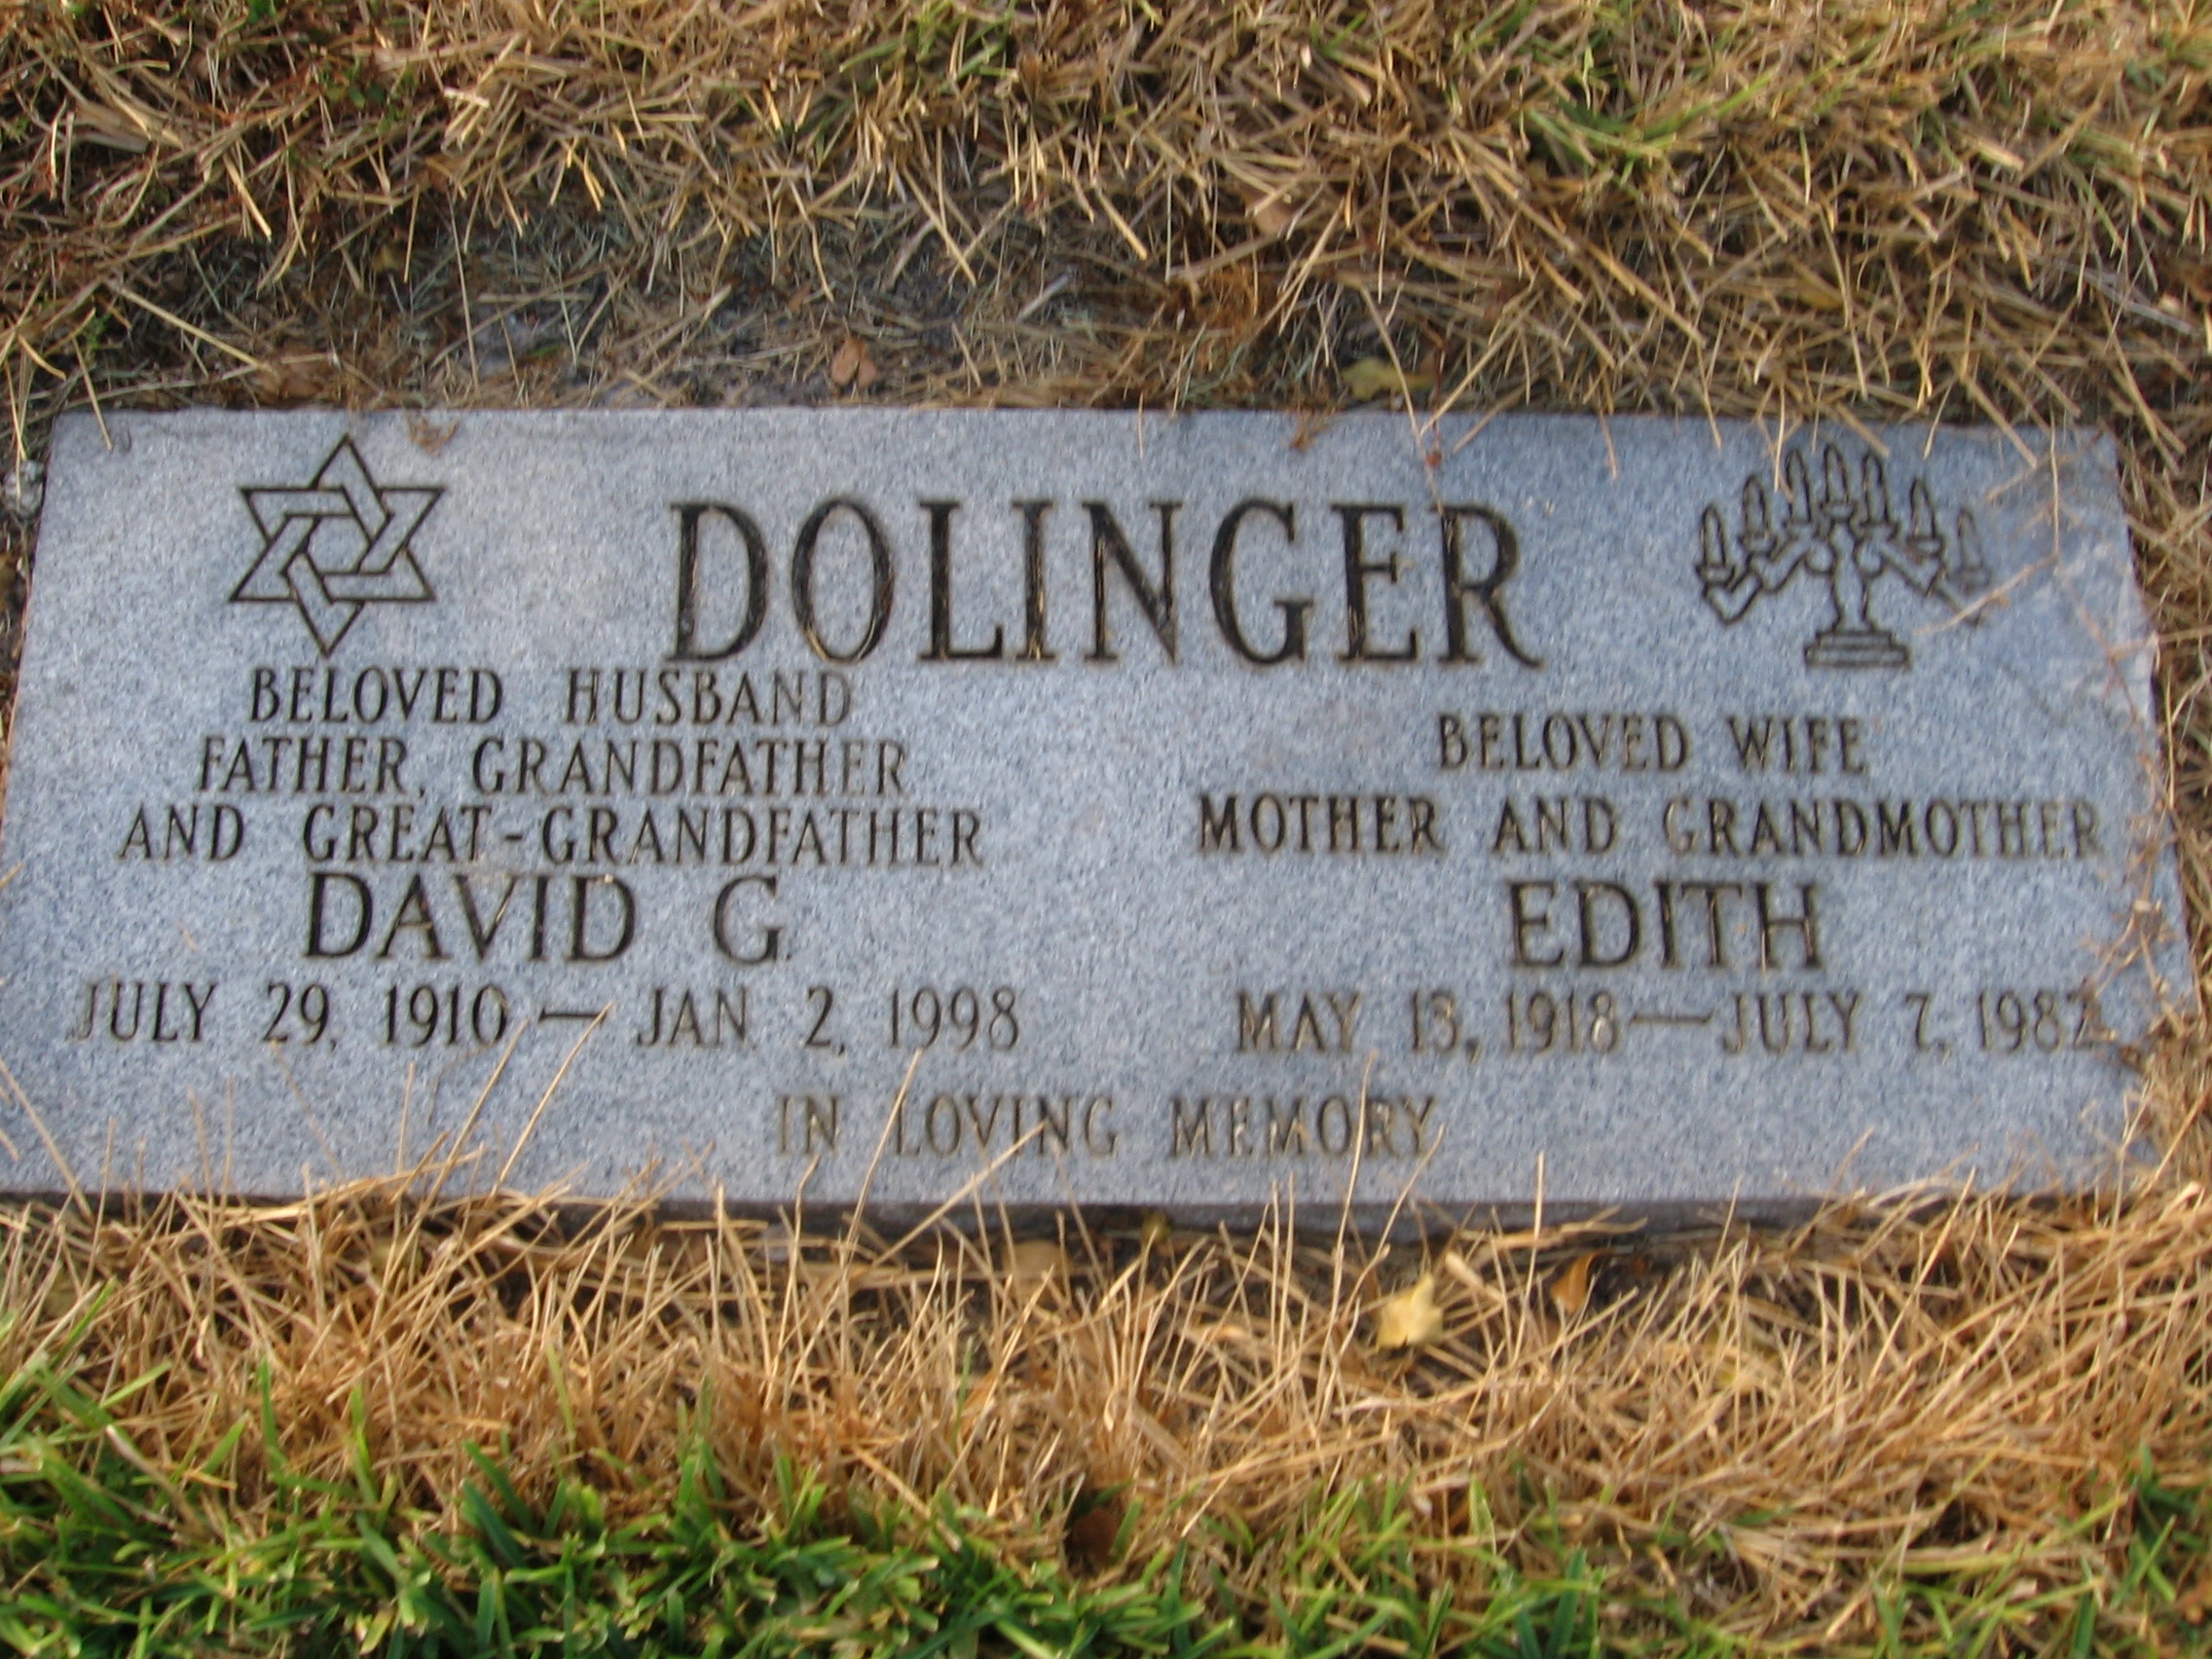 David G Dolinger